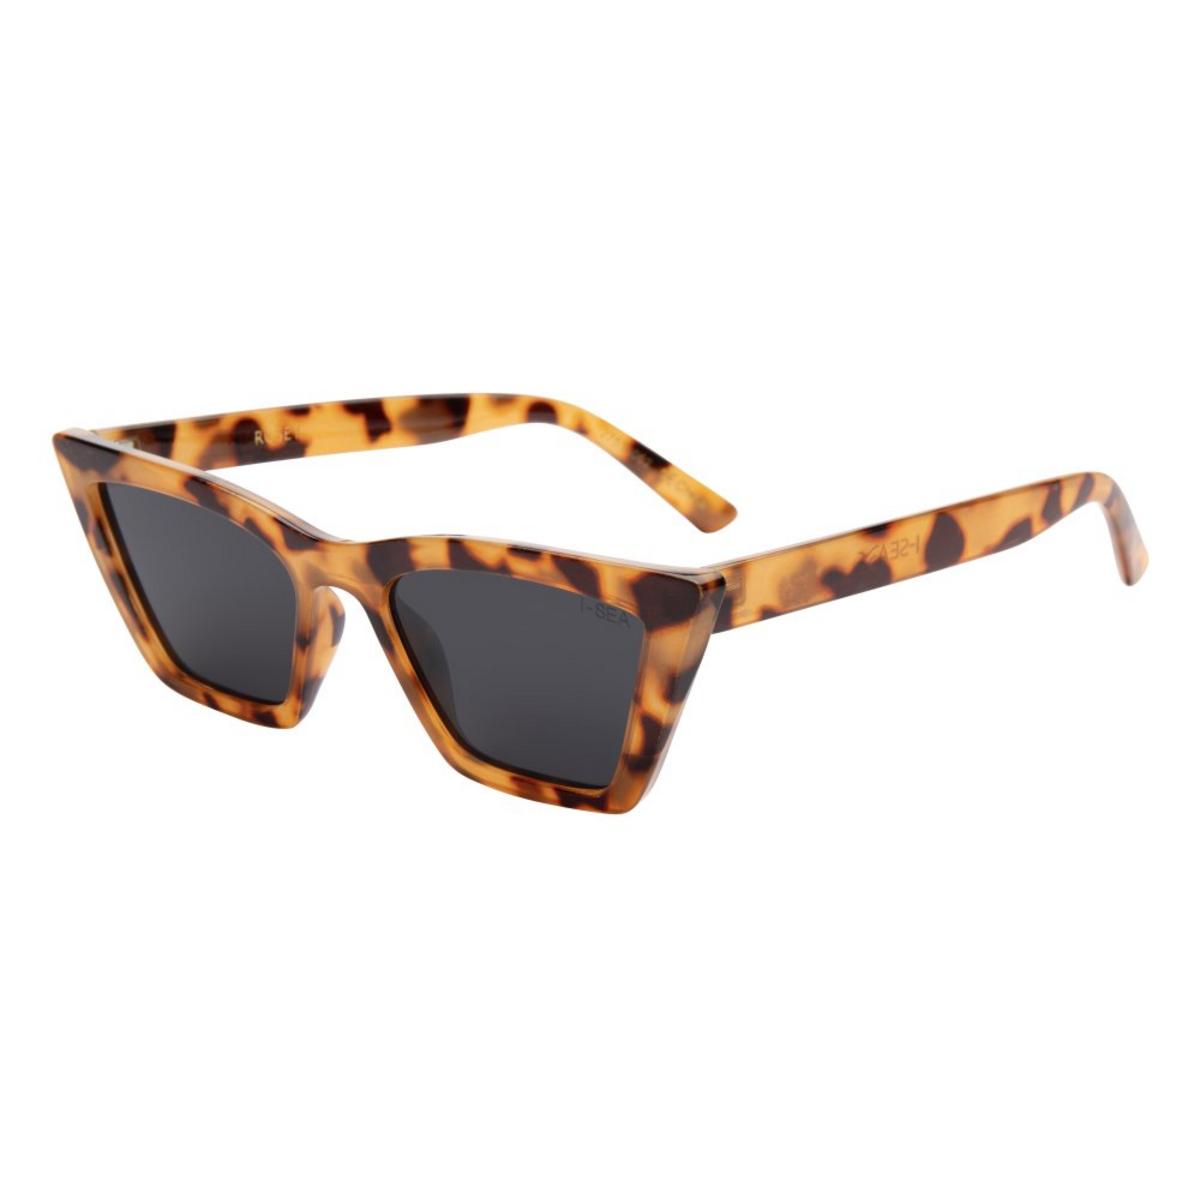 I-SEA Rosey Sunglasses